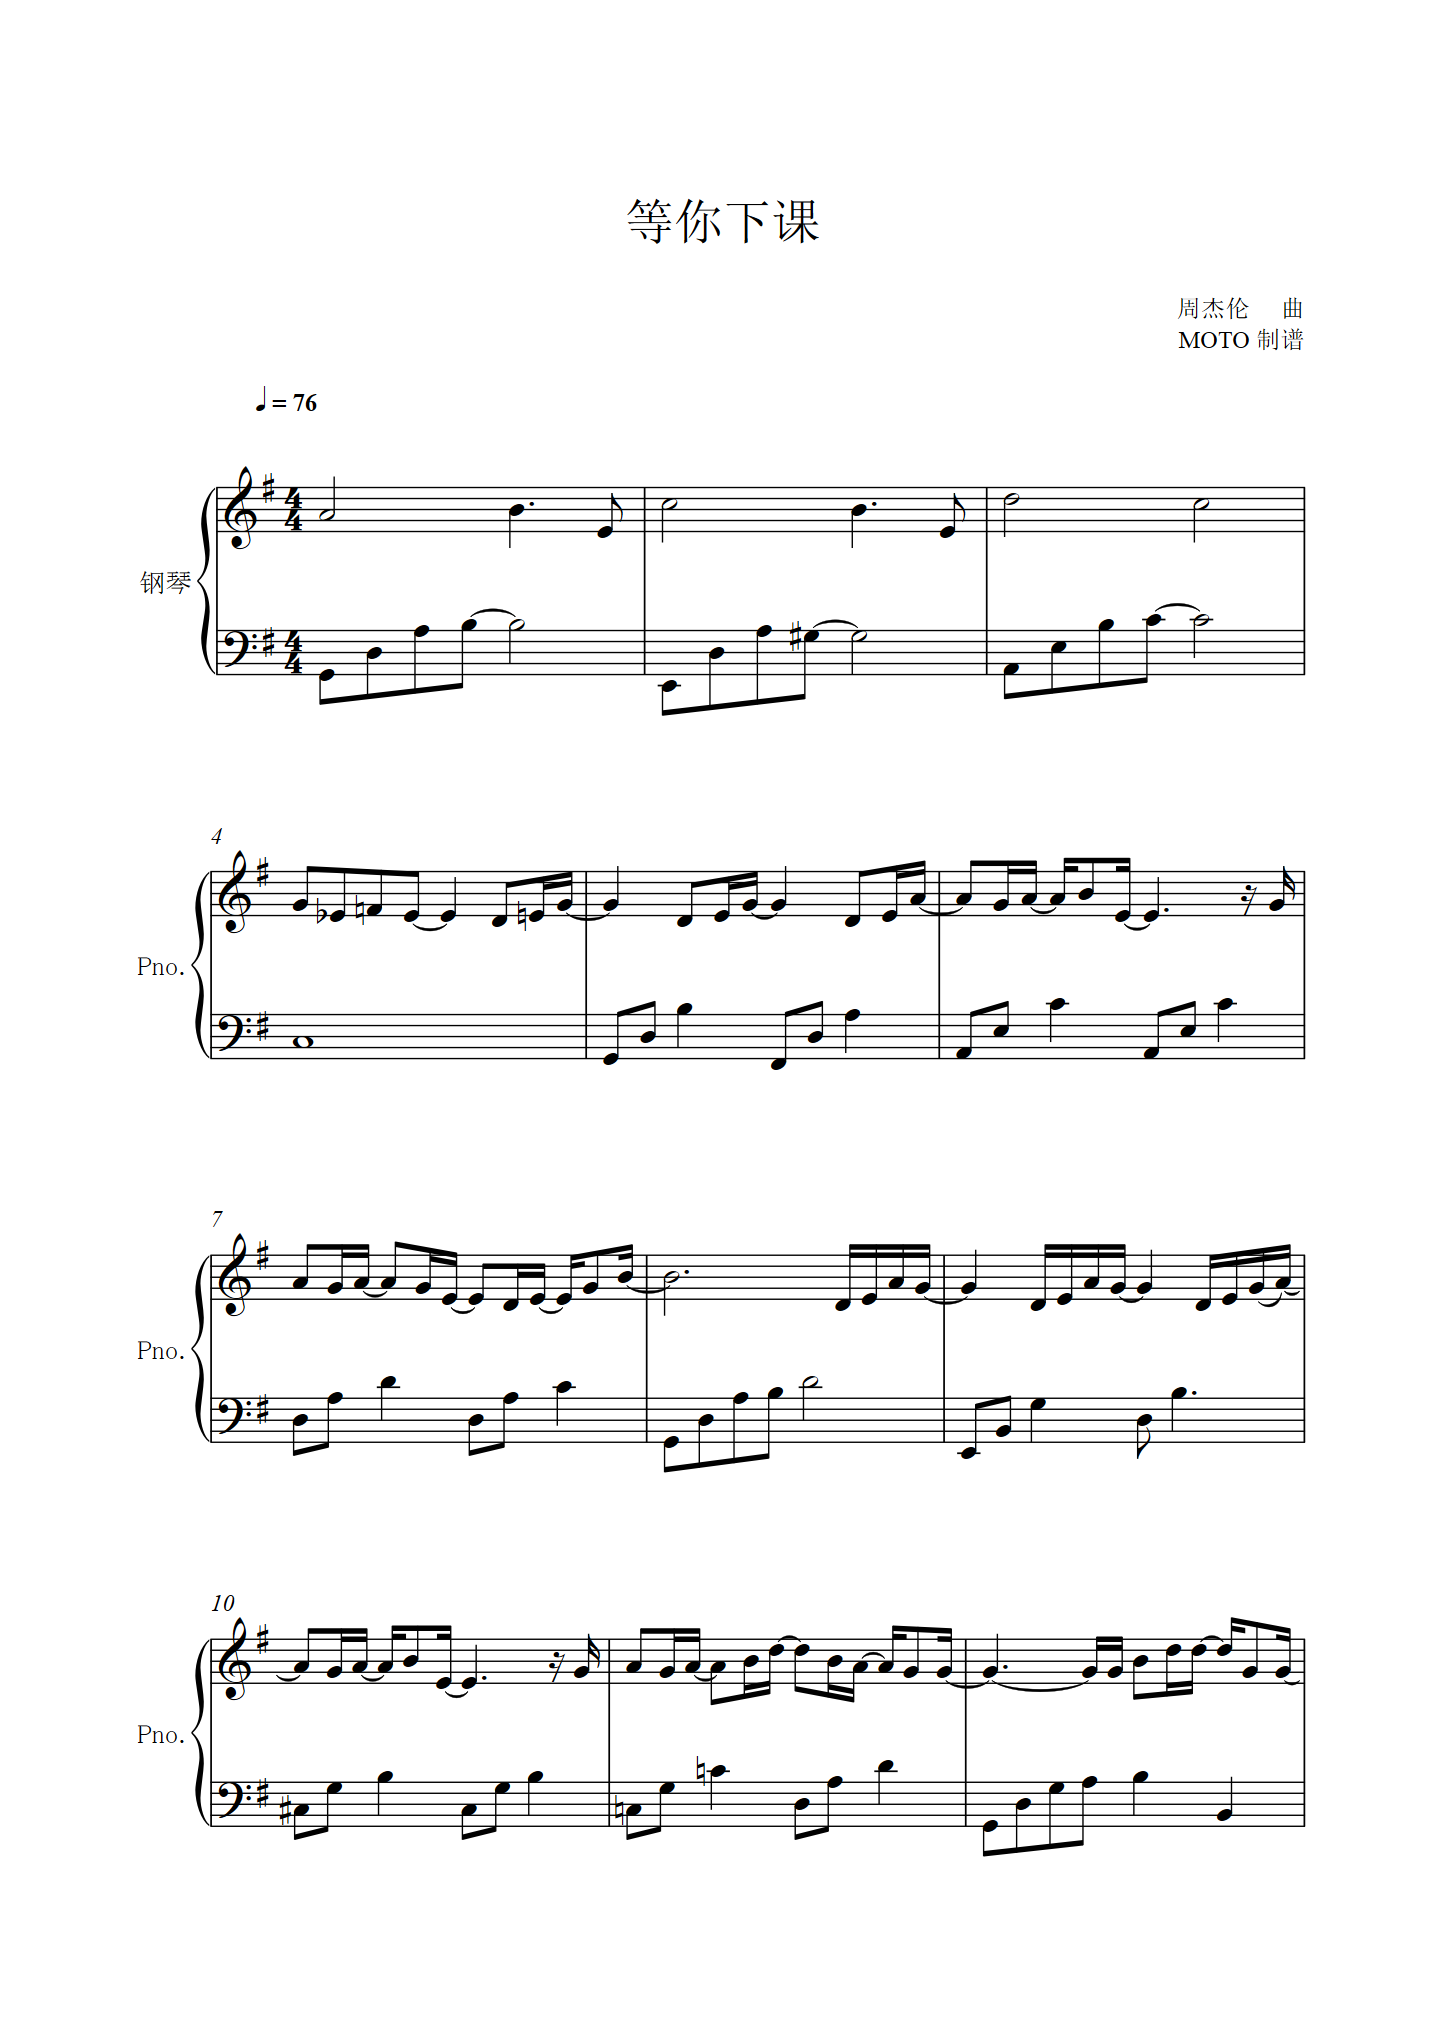 等你下课-周杰伦五线谱预览1-钢琴谱文件（五线谱、双手简谱、数字谱、Midi、PDF）免费下载